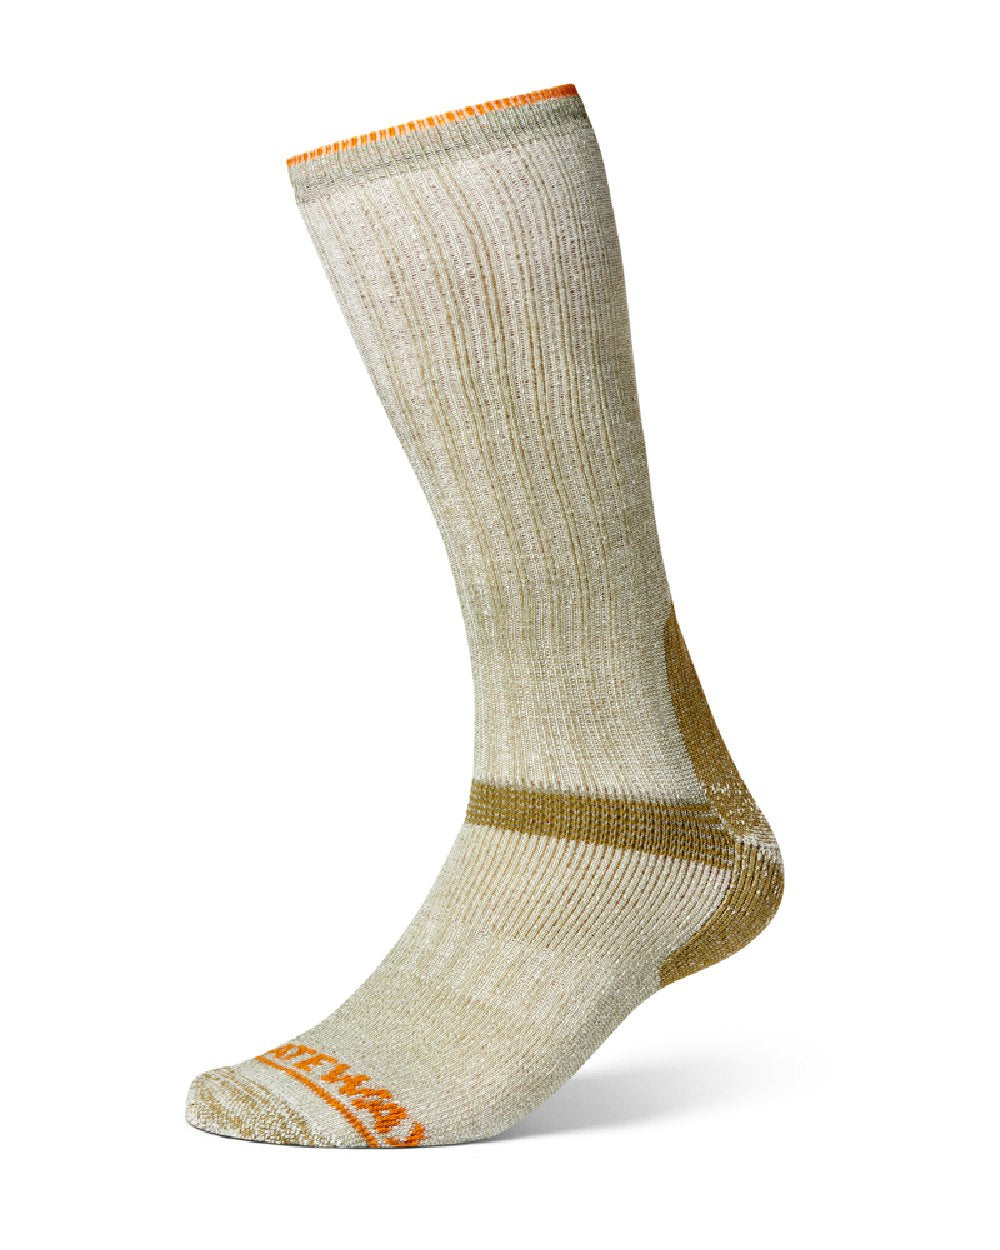 GateWay 1 Ultra Kneehigh Socks in Olive Melange